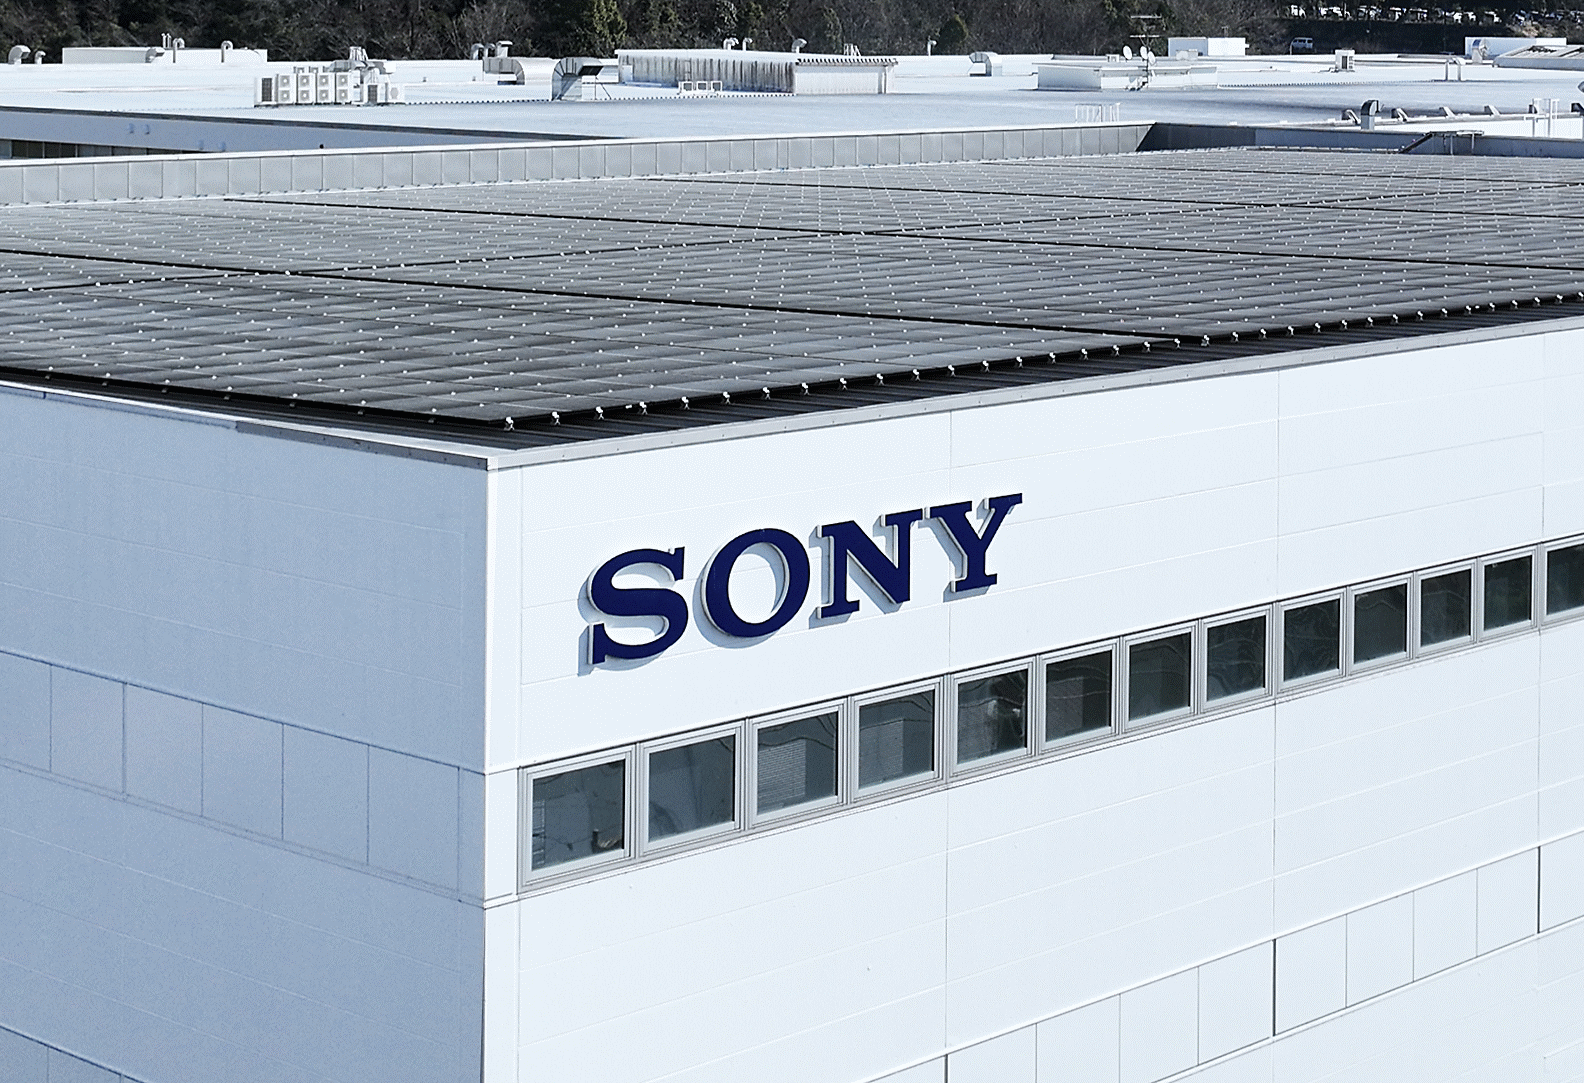 Fotografía que muestra el techo de una fábrica con paneles solares y el logotipo de “SONY”